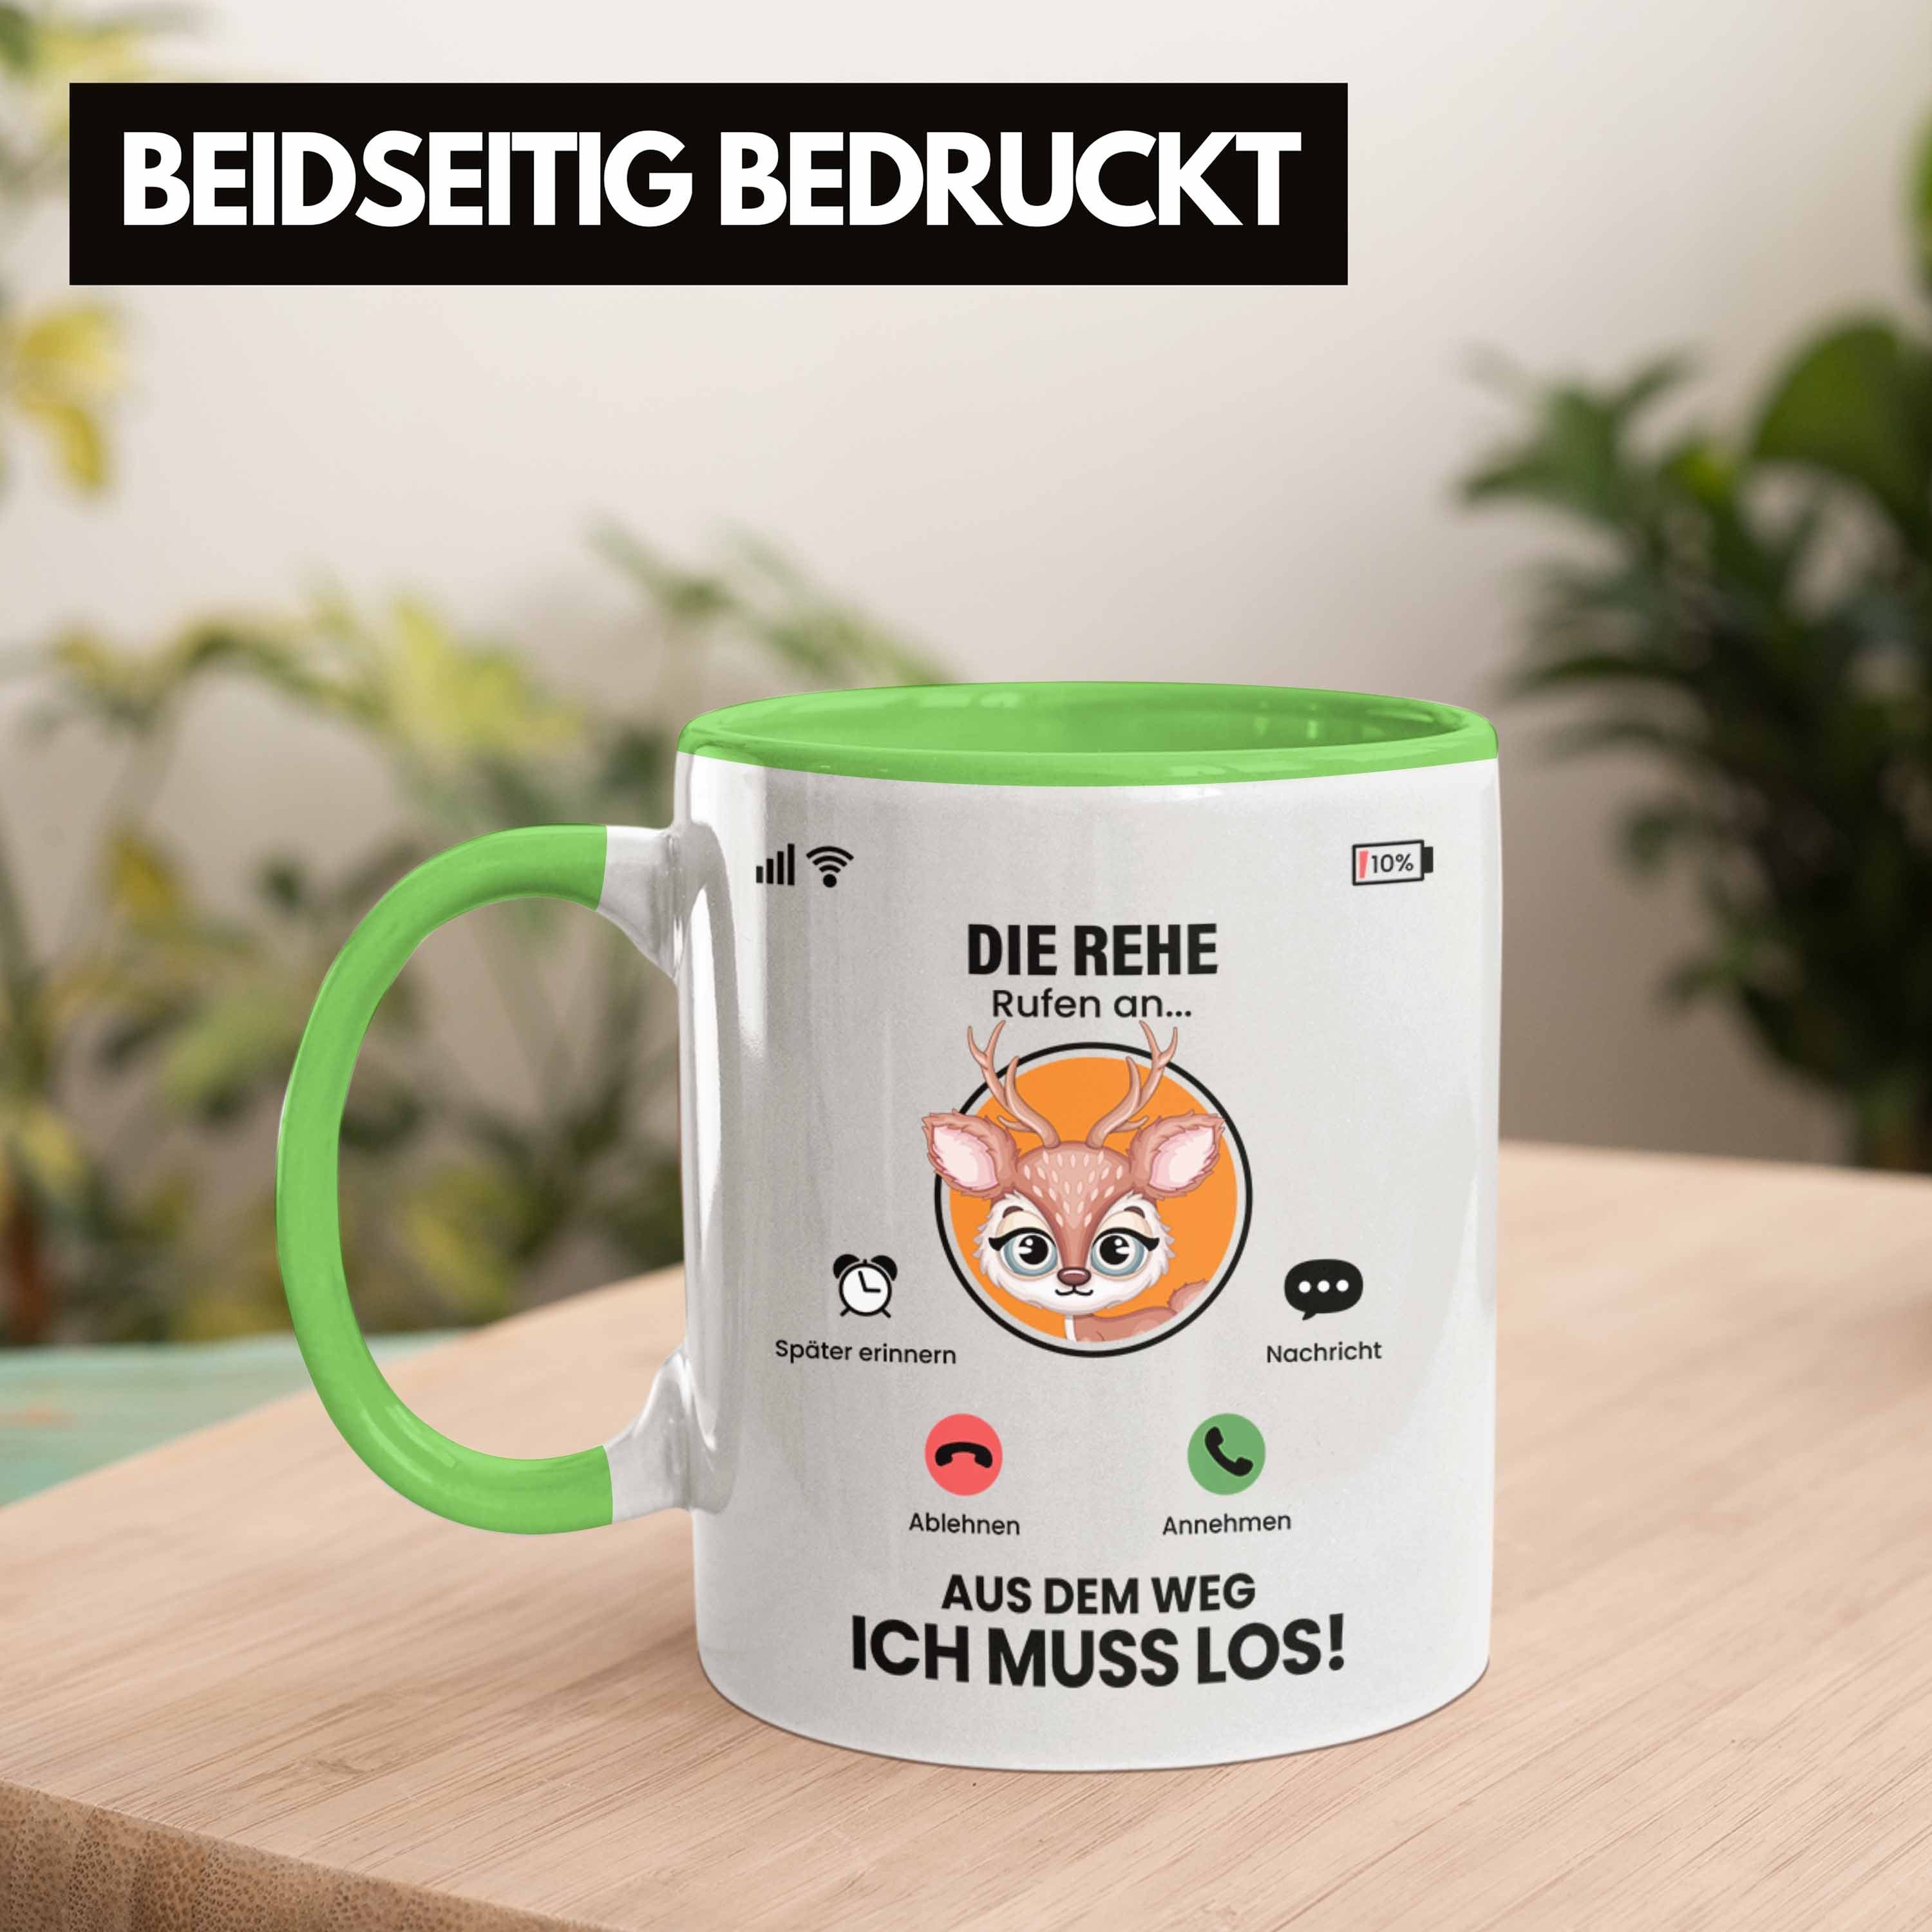 Trendation Tasse Geschenkide für Rufen Tasse Rehe Züchter An Besitzer Geschenk Grün Die Rehe